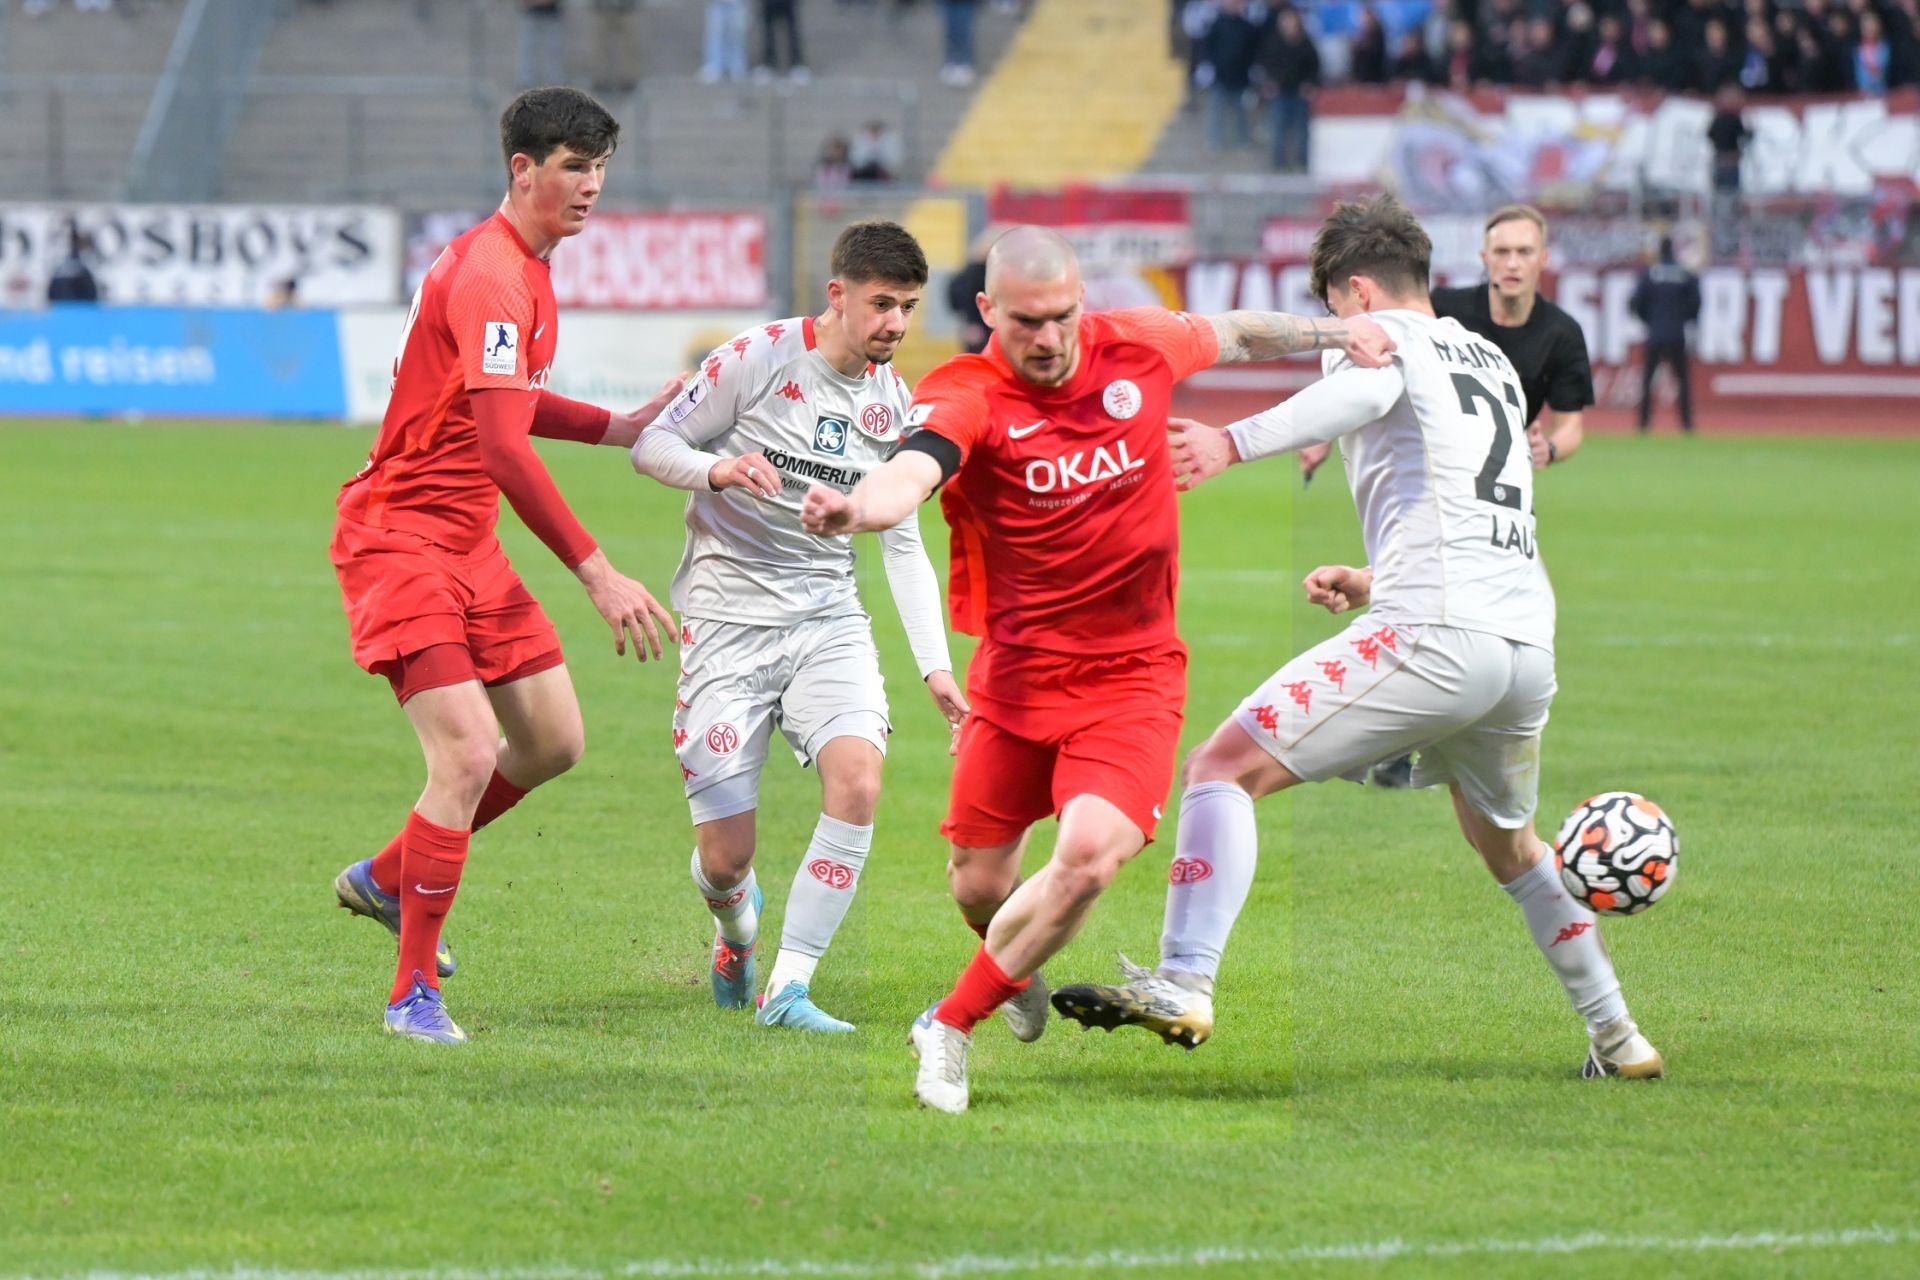 Regionalliga Südwest, Saison 2021/22, KSV Hessen Kassel, FSV Mainz 05 II, Endstand 2:1, Dierssen